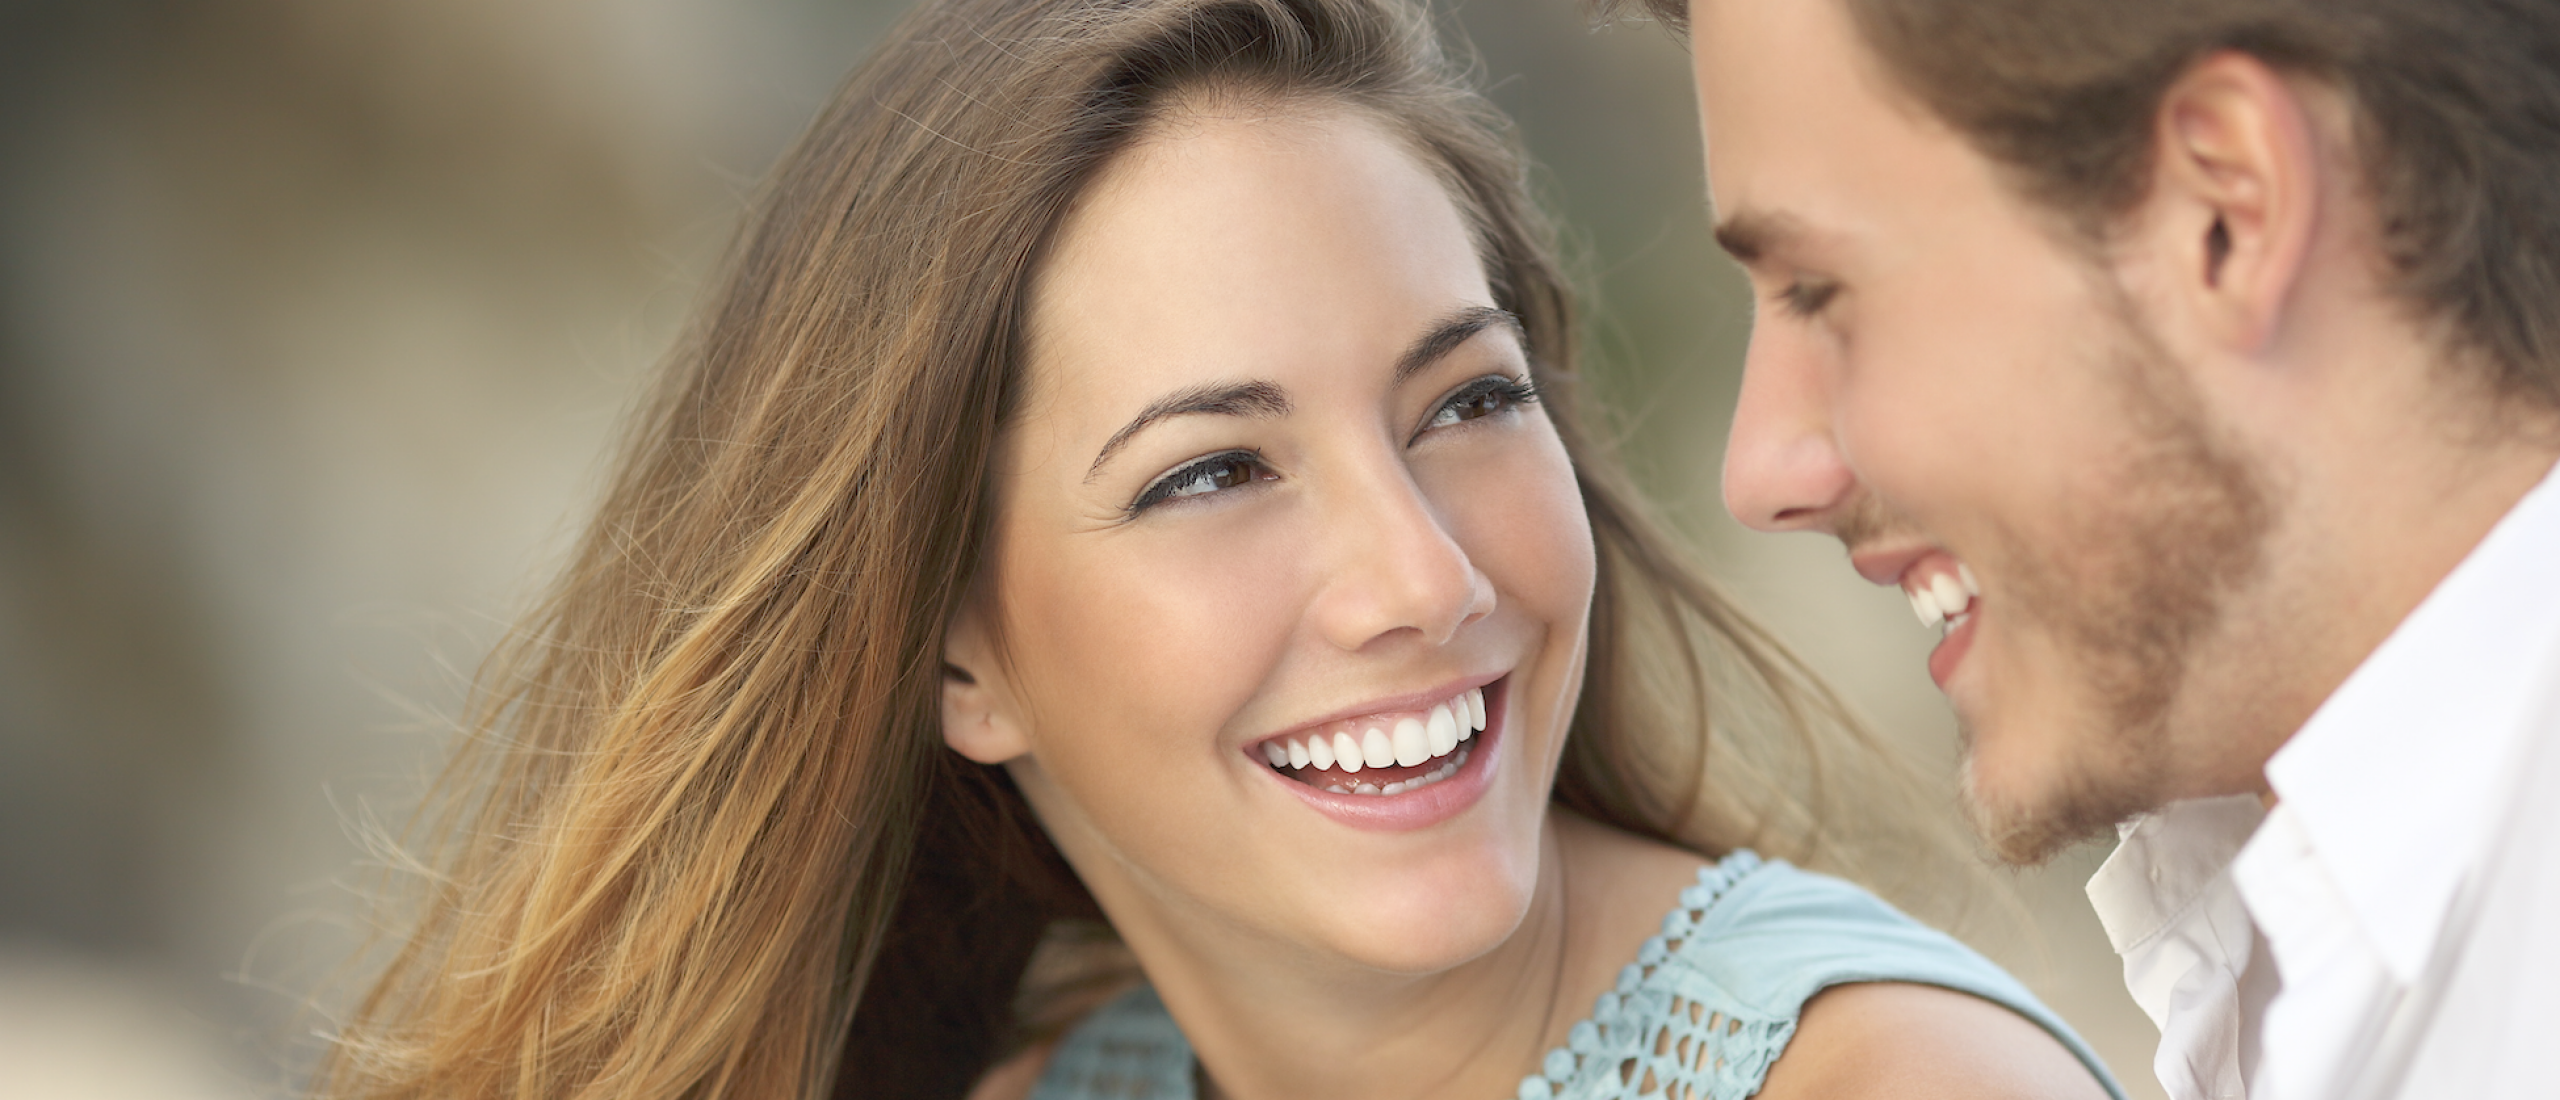 Relaties: Tien basisregels voor een liefdevolle relatie